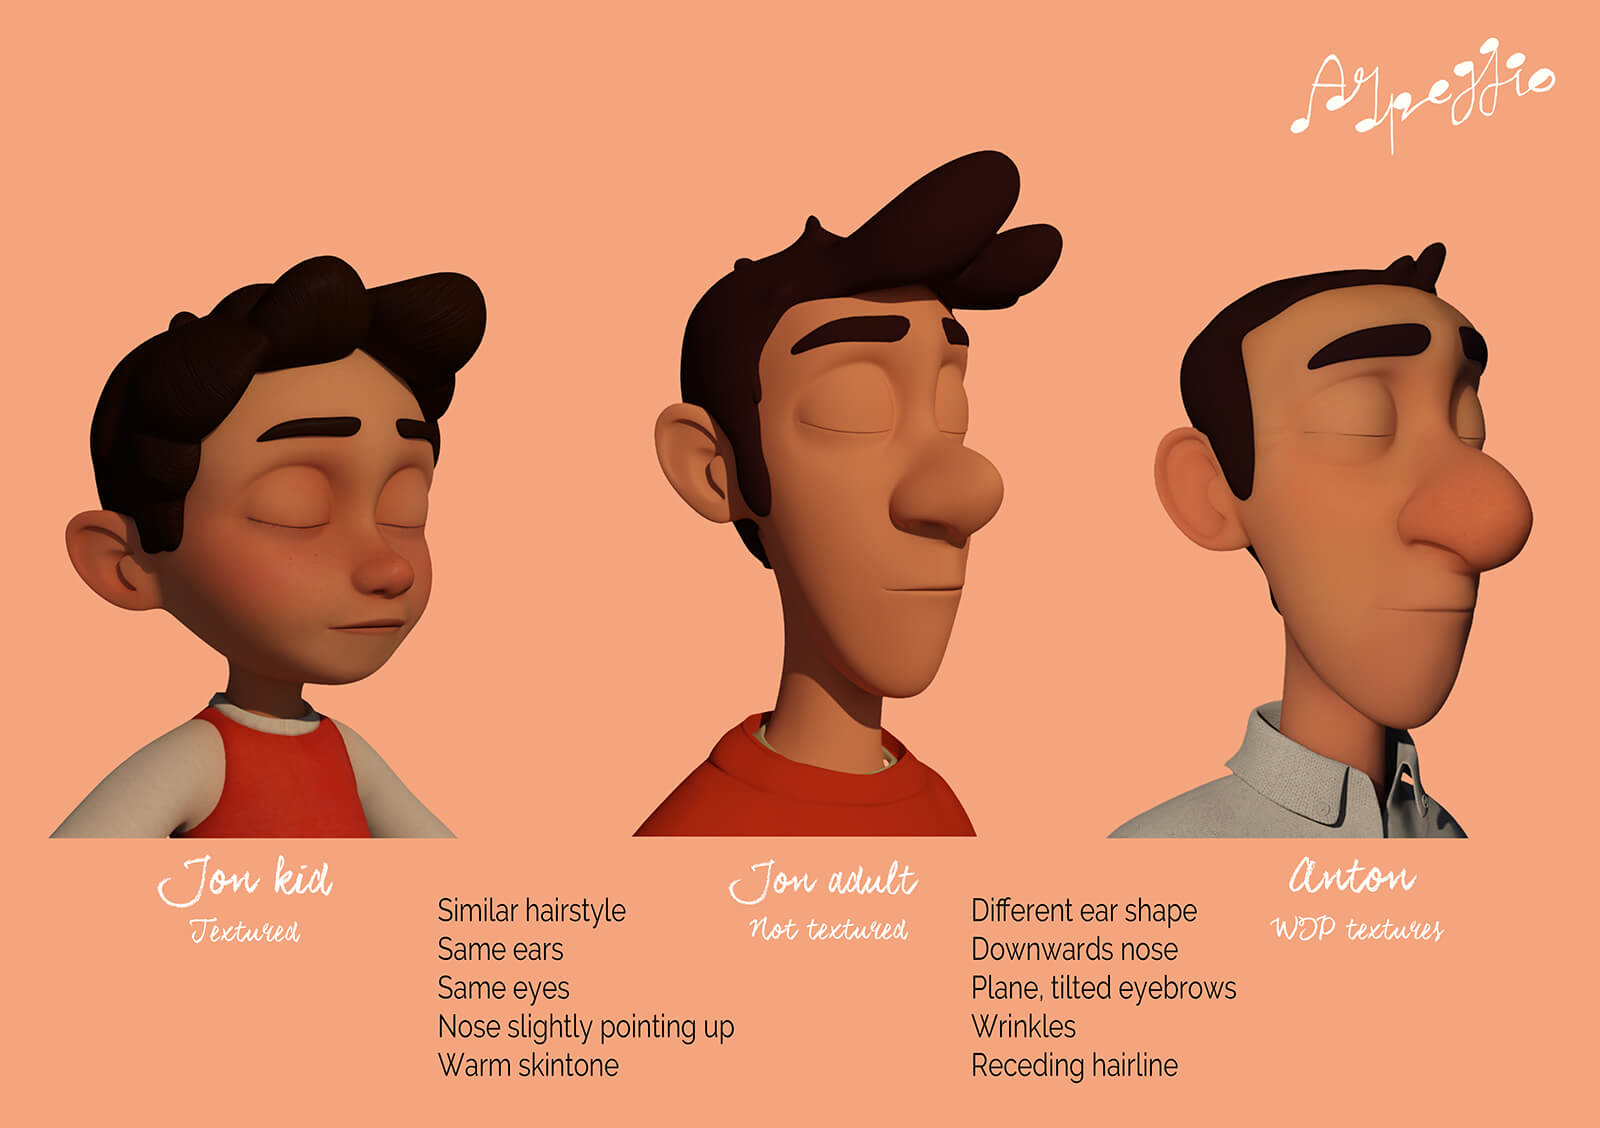 Modelos en 3D de las cabezas de los personajes de la película Arpeggio, que muestran diferentes niveles de texturizado a lo largo del proceso de producción.